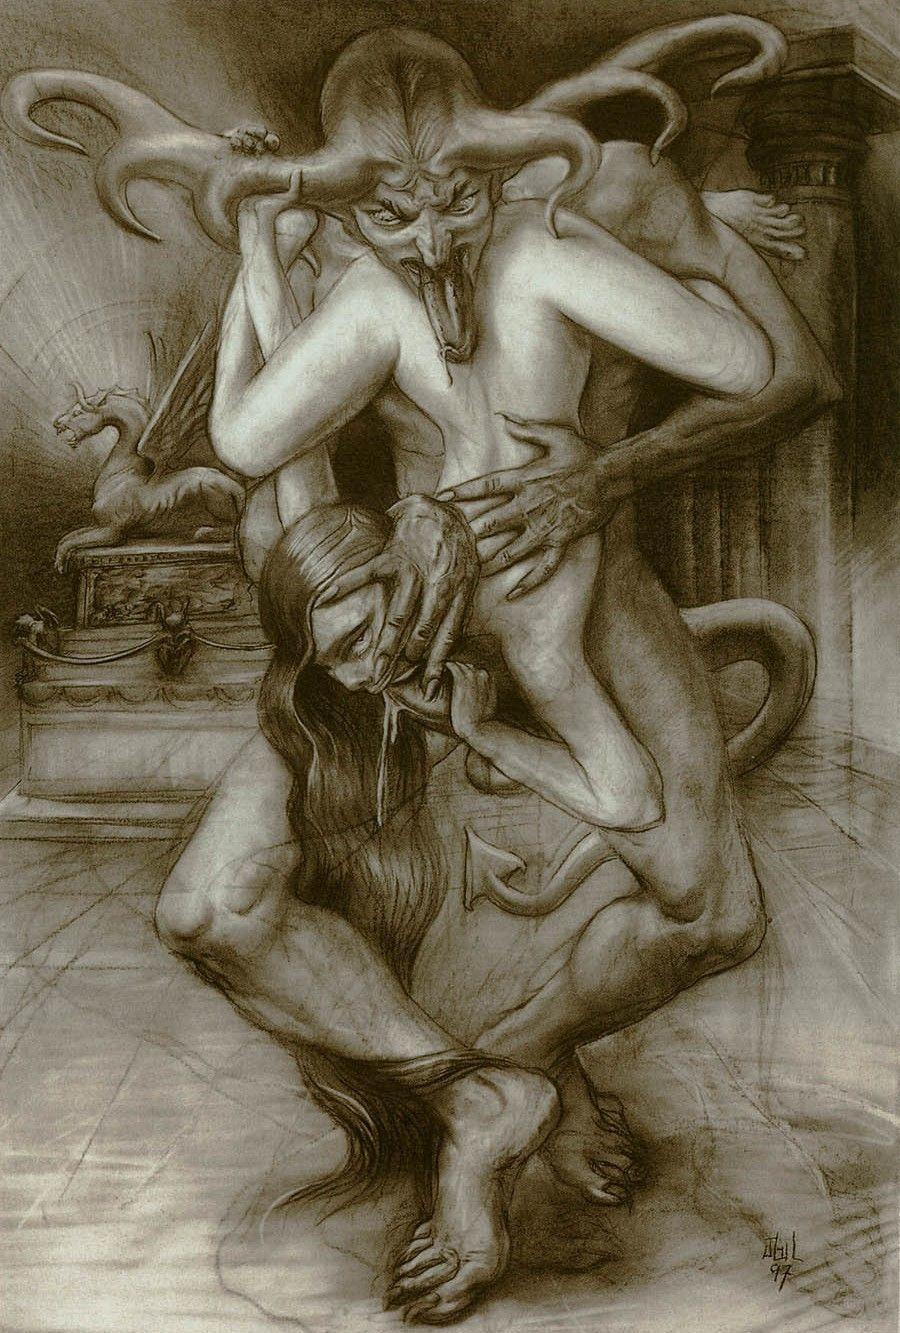 Erotic stories occult